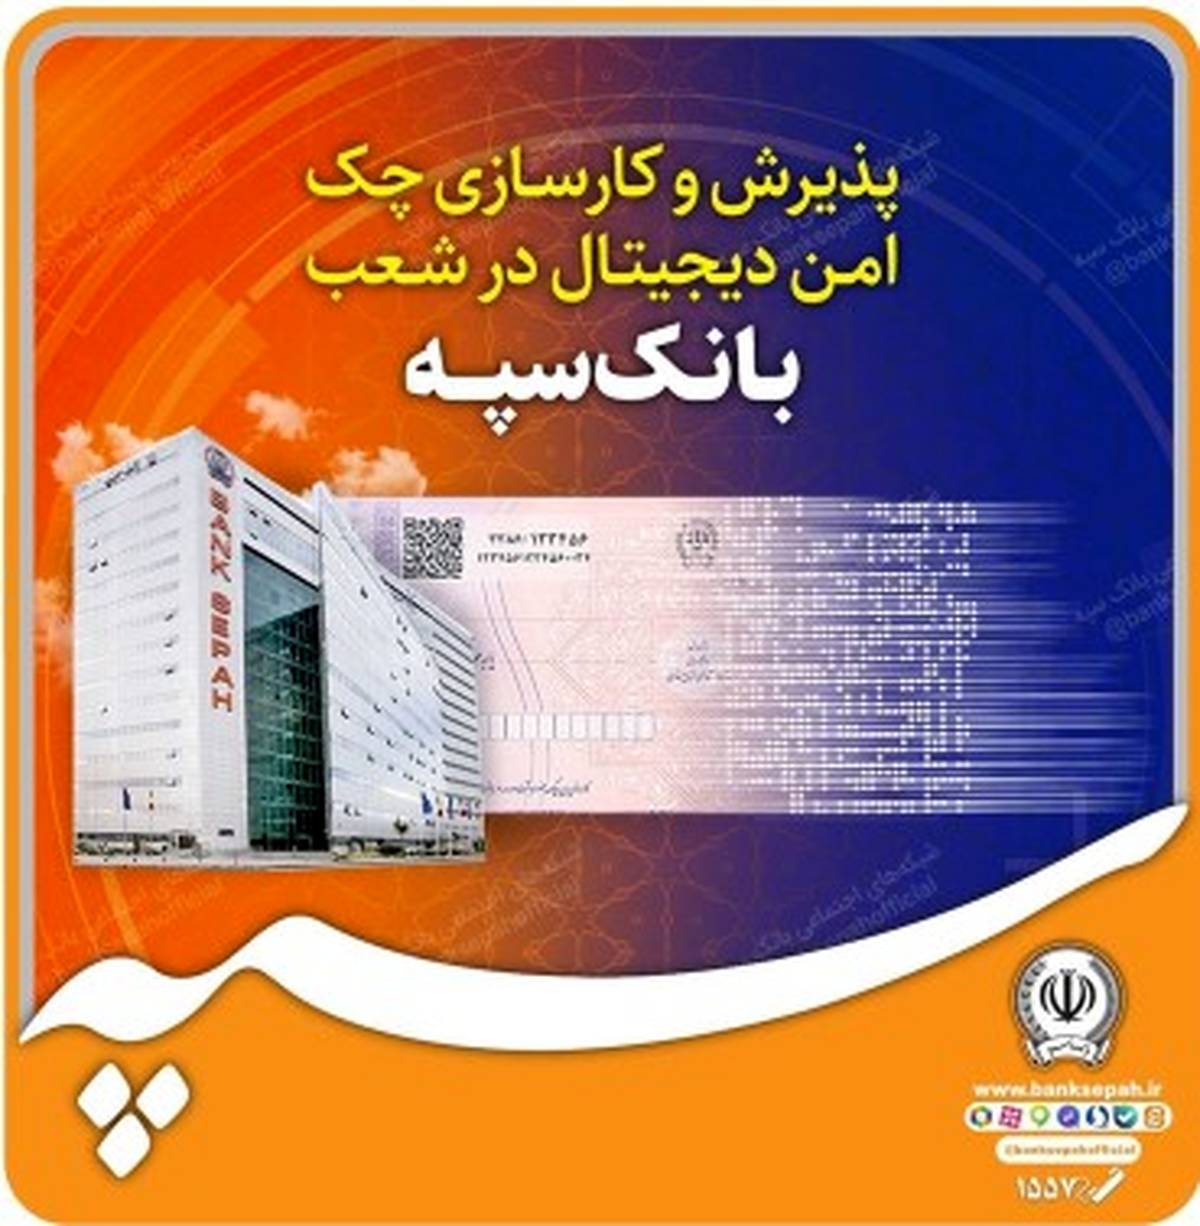 چک امن دیجیتال در شعب بانک سپه